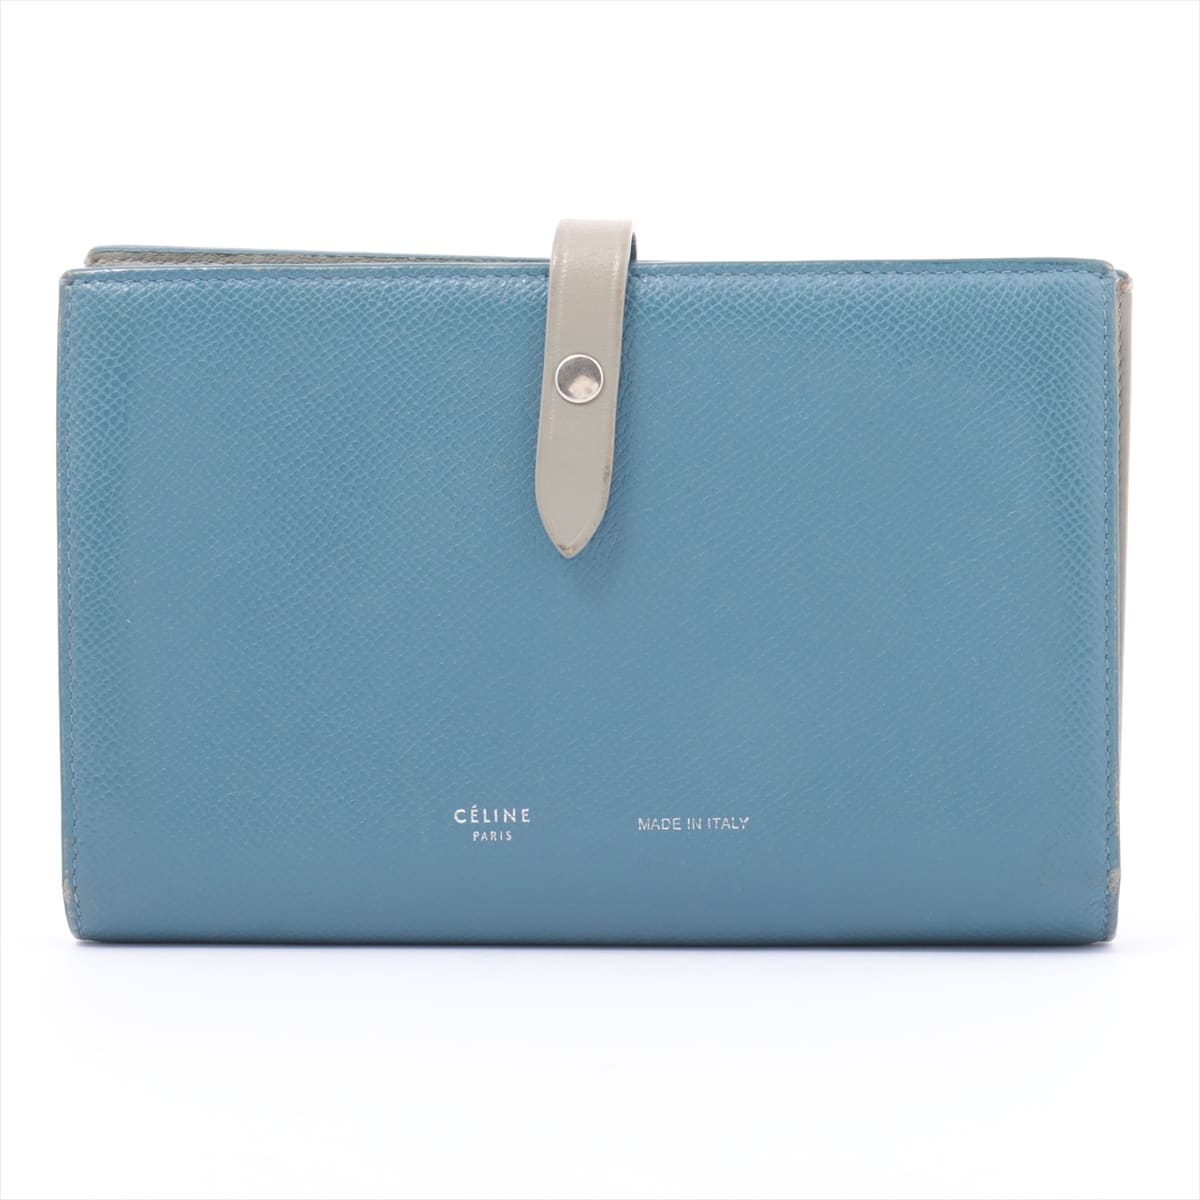 CELINE Strap Large Multifunction Leather Wallet Blue